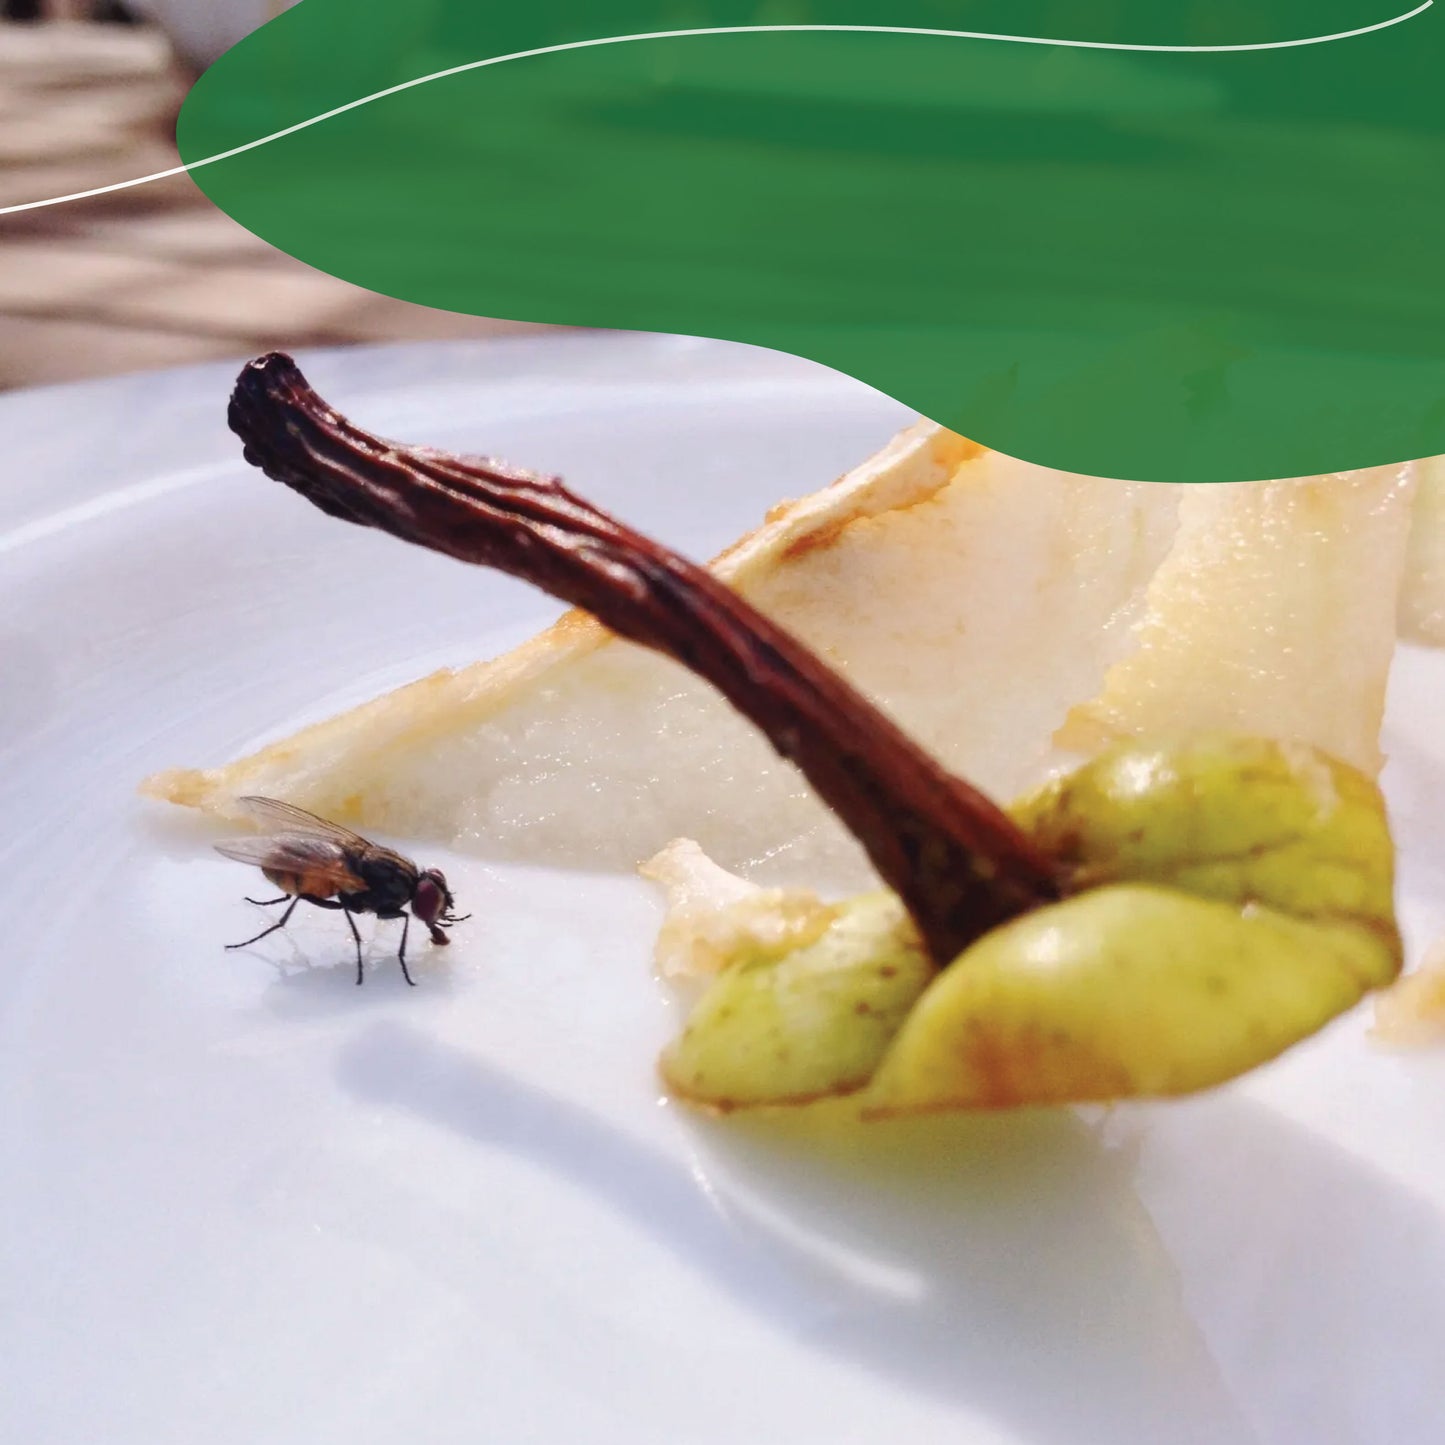 Kit de trampas de pegamento para moscas - No venenoso -  100% Ecológico.